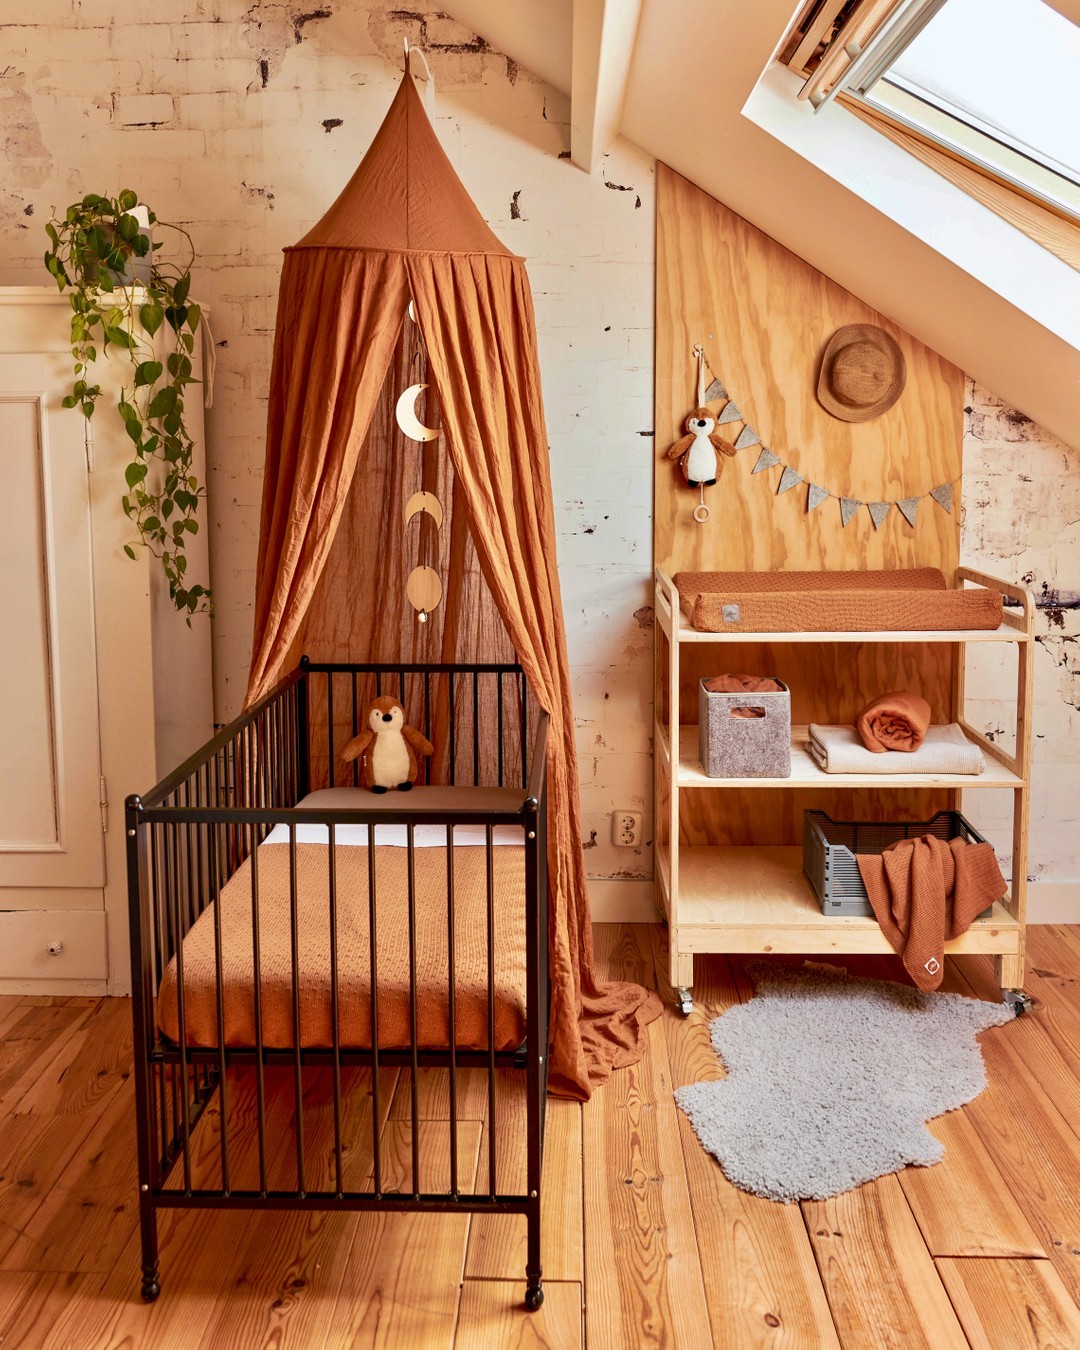 Beschreibt dieses Babyzimmer von Jollein mit einem Wort 💬⠀⠀⠀⠀⠀⠀⠀⠀⠀
Wir sind gespannt! 🤩⠀⠀⠀⠀⠀⠀⠀⠀⠀
⠀⠀⠀⠀⠀⠀⠀⠀⠀
Ihr liebt die warmen Farben von Jollein? Link in Bio!⠀⠀⠀⠀⠀⠀⠀⠀⠀
my-fantasyroom.de ✨⠀⠀⠀⠀⠀⠀⠀⠀⠀
.⠀⠀⠀⠀⠀⠀⠀⠀⠀
.⠀⠀⠀⠀⠀⠀⠀⠀⠀
. ⠀⠀⠀⠀⠀⠀⠀⠀⠀
#myfantasyroom #fantasyroomdeko #babyzimmer #babyausstattung #schwanger #kinderzimmerinspo #kidsroom #nursery #momtobe #babyinterior #babyroom #lovebaby #kids #roominspiration #inspiration #interiorinspiration #jollein #betthimmel #canopy #cozy #neutralnursery #einrichten #babyinspiration